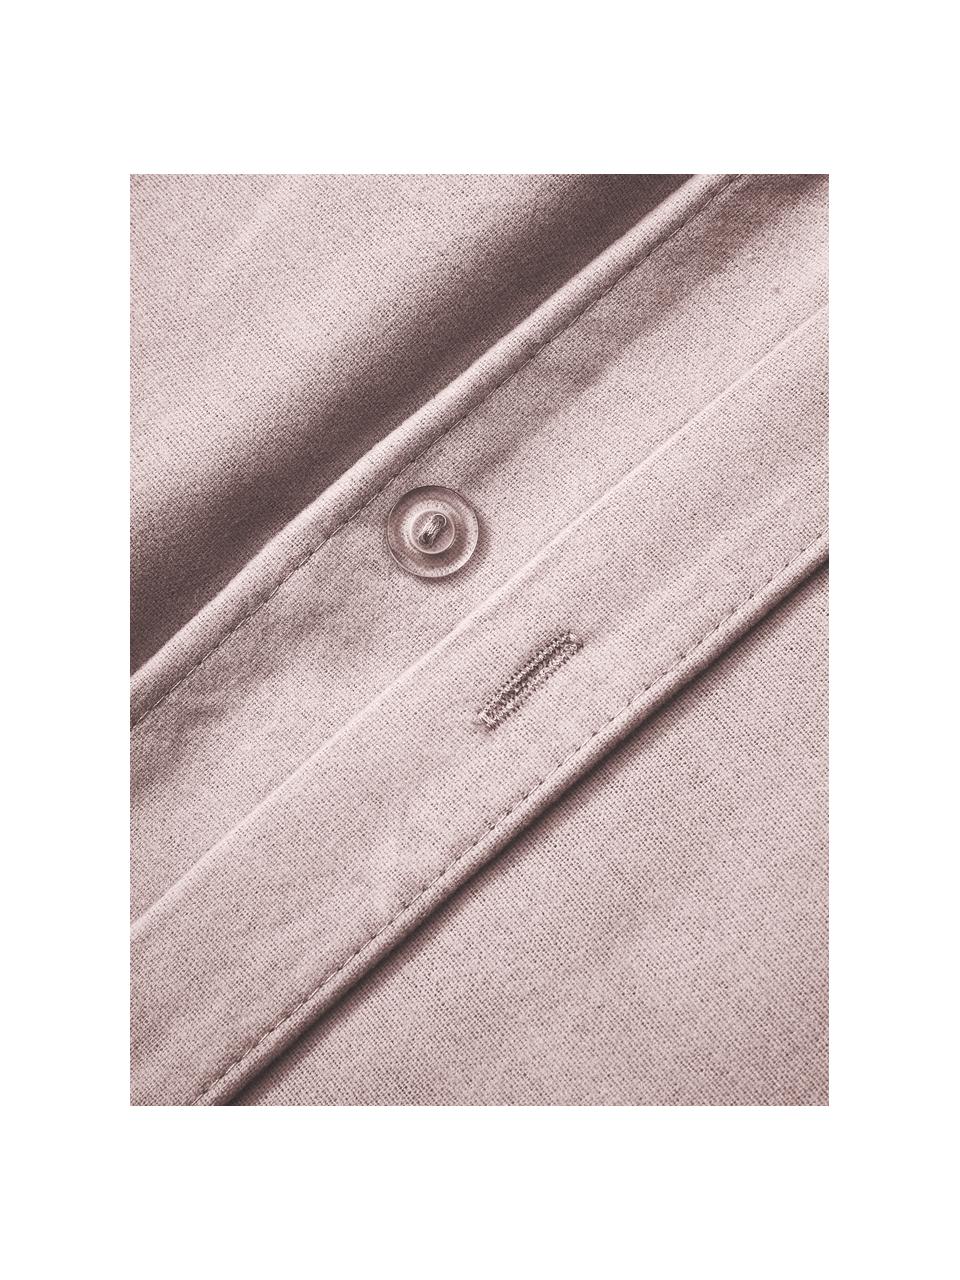 Flanell-Bettdeckenbezug Biba, Webart: Flanell, Hellrosa, B 200 x L 200 cm